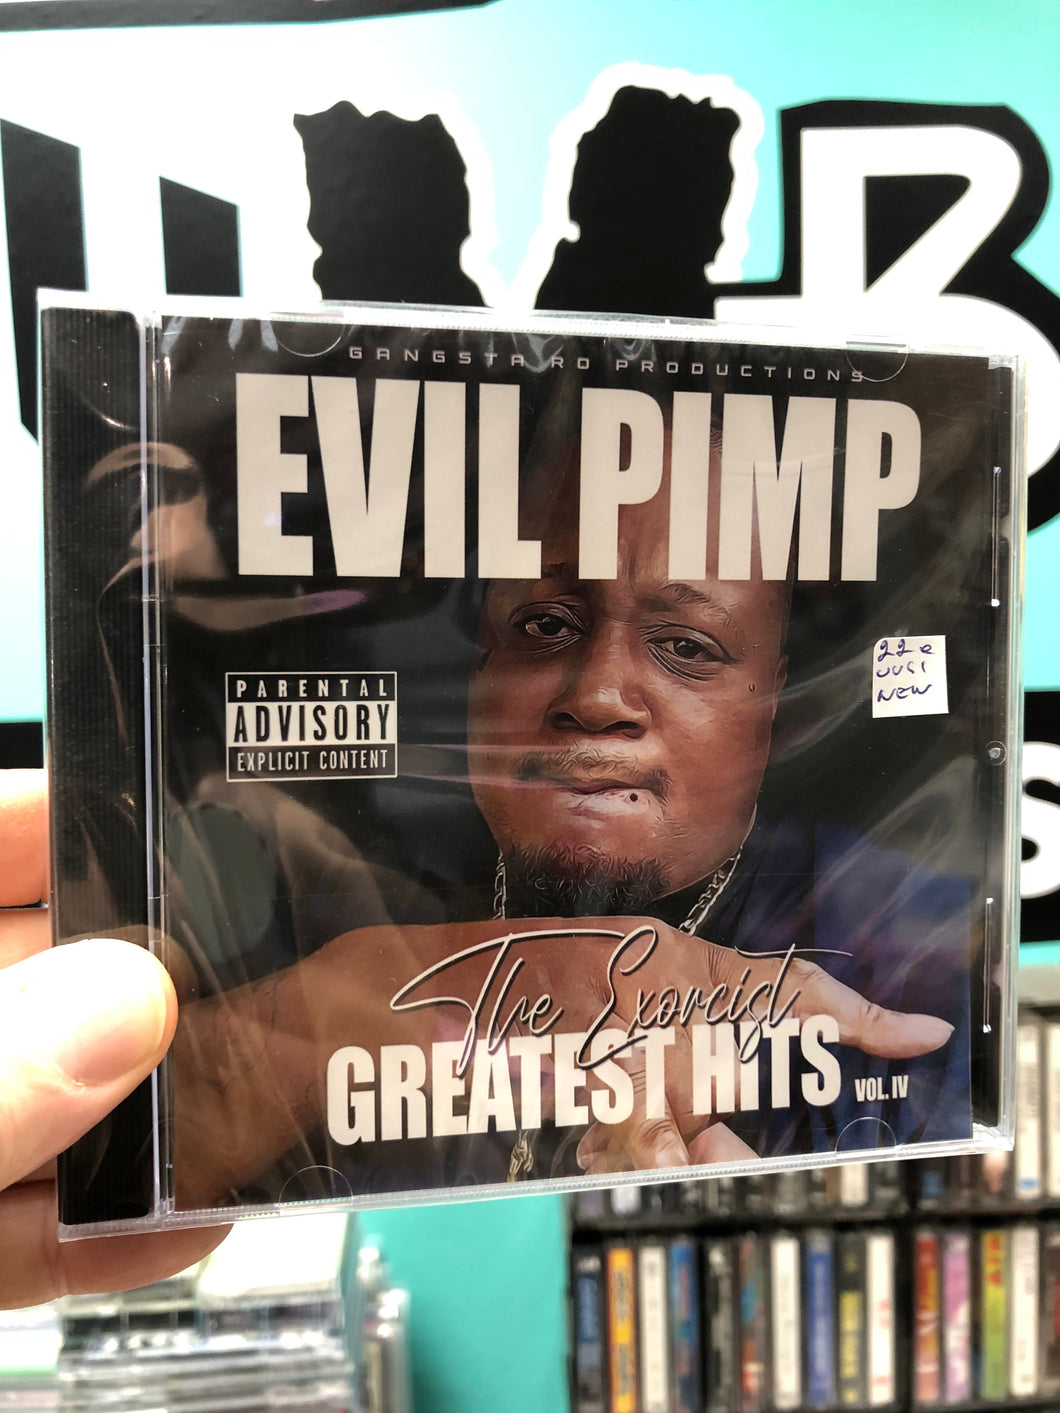 Evil Pimp: The Exorcist - Greatest Hits Vol. IV